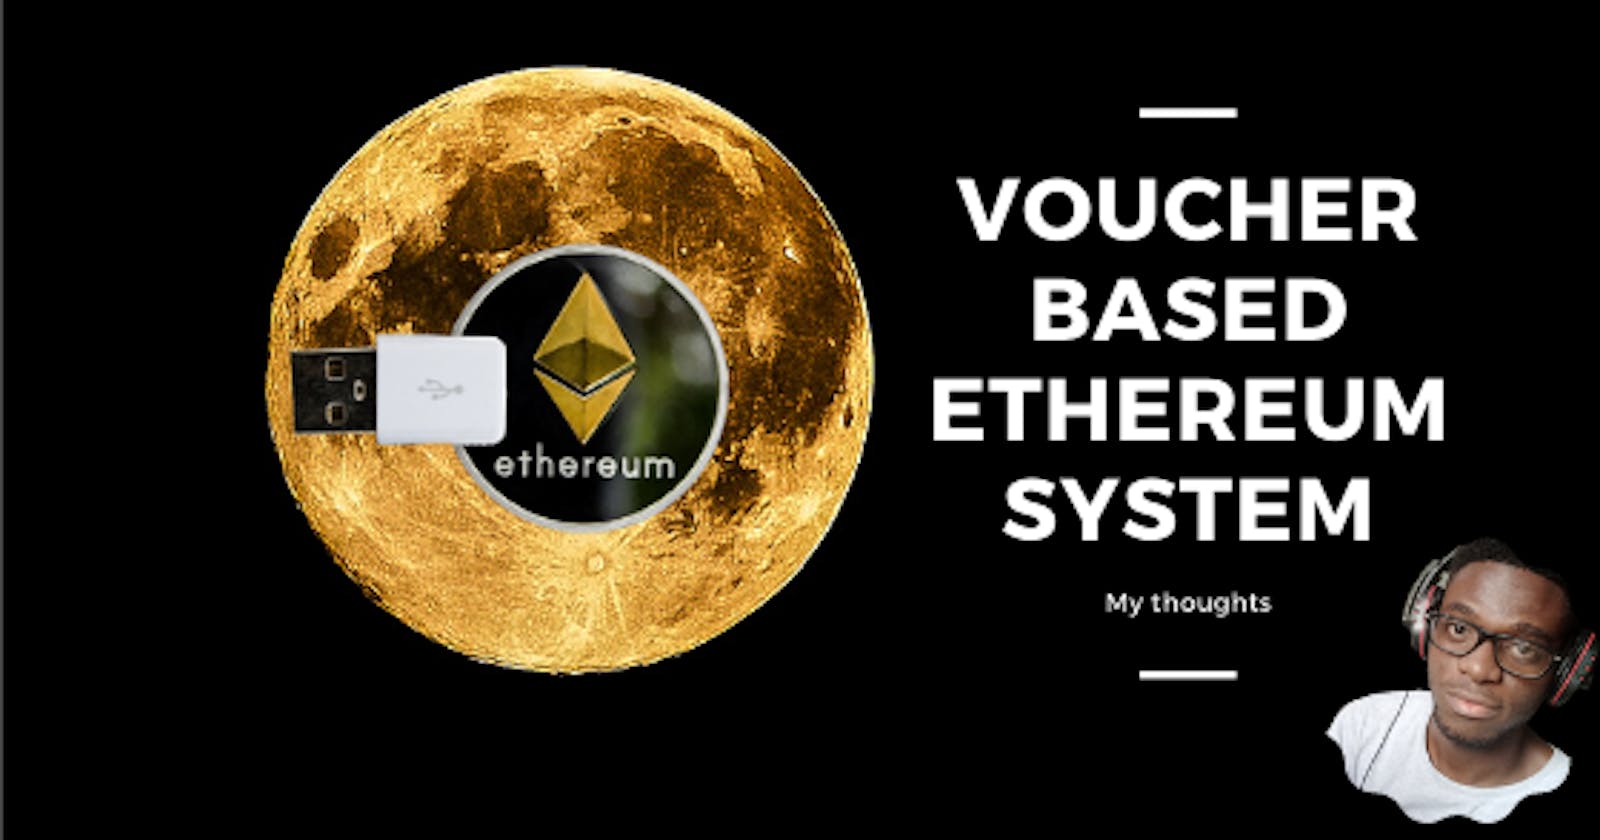 Voucher Based Ethereum System